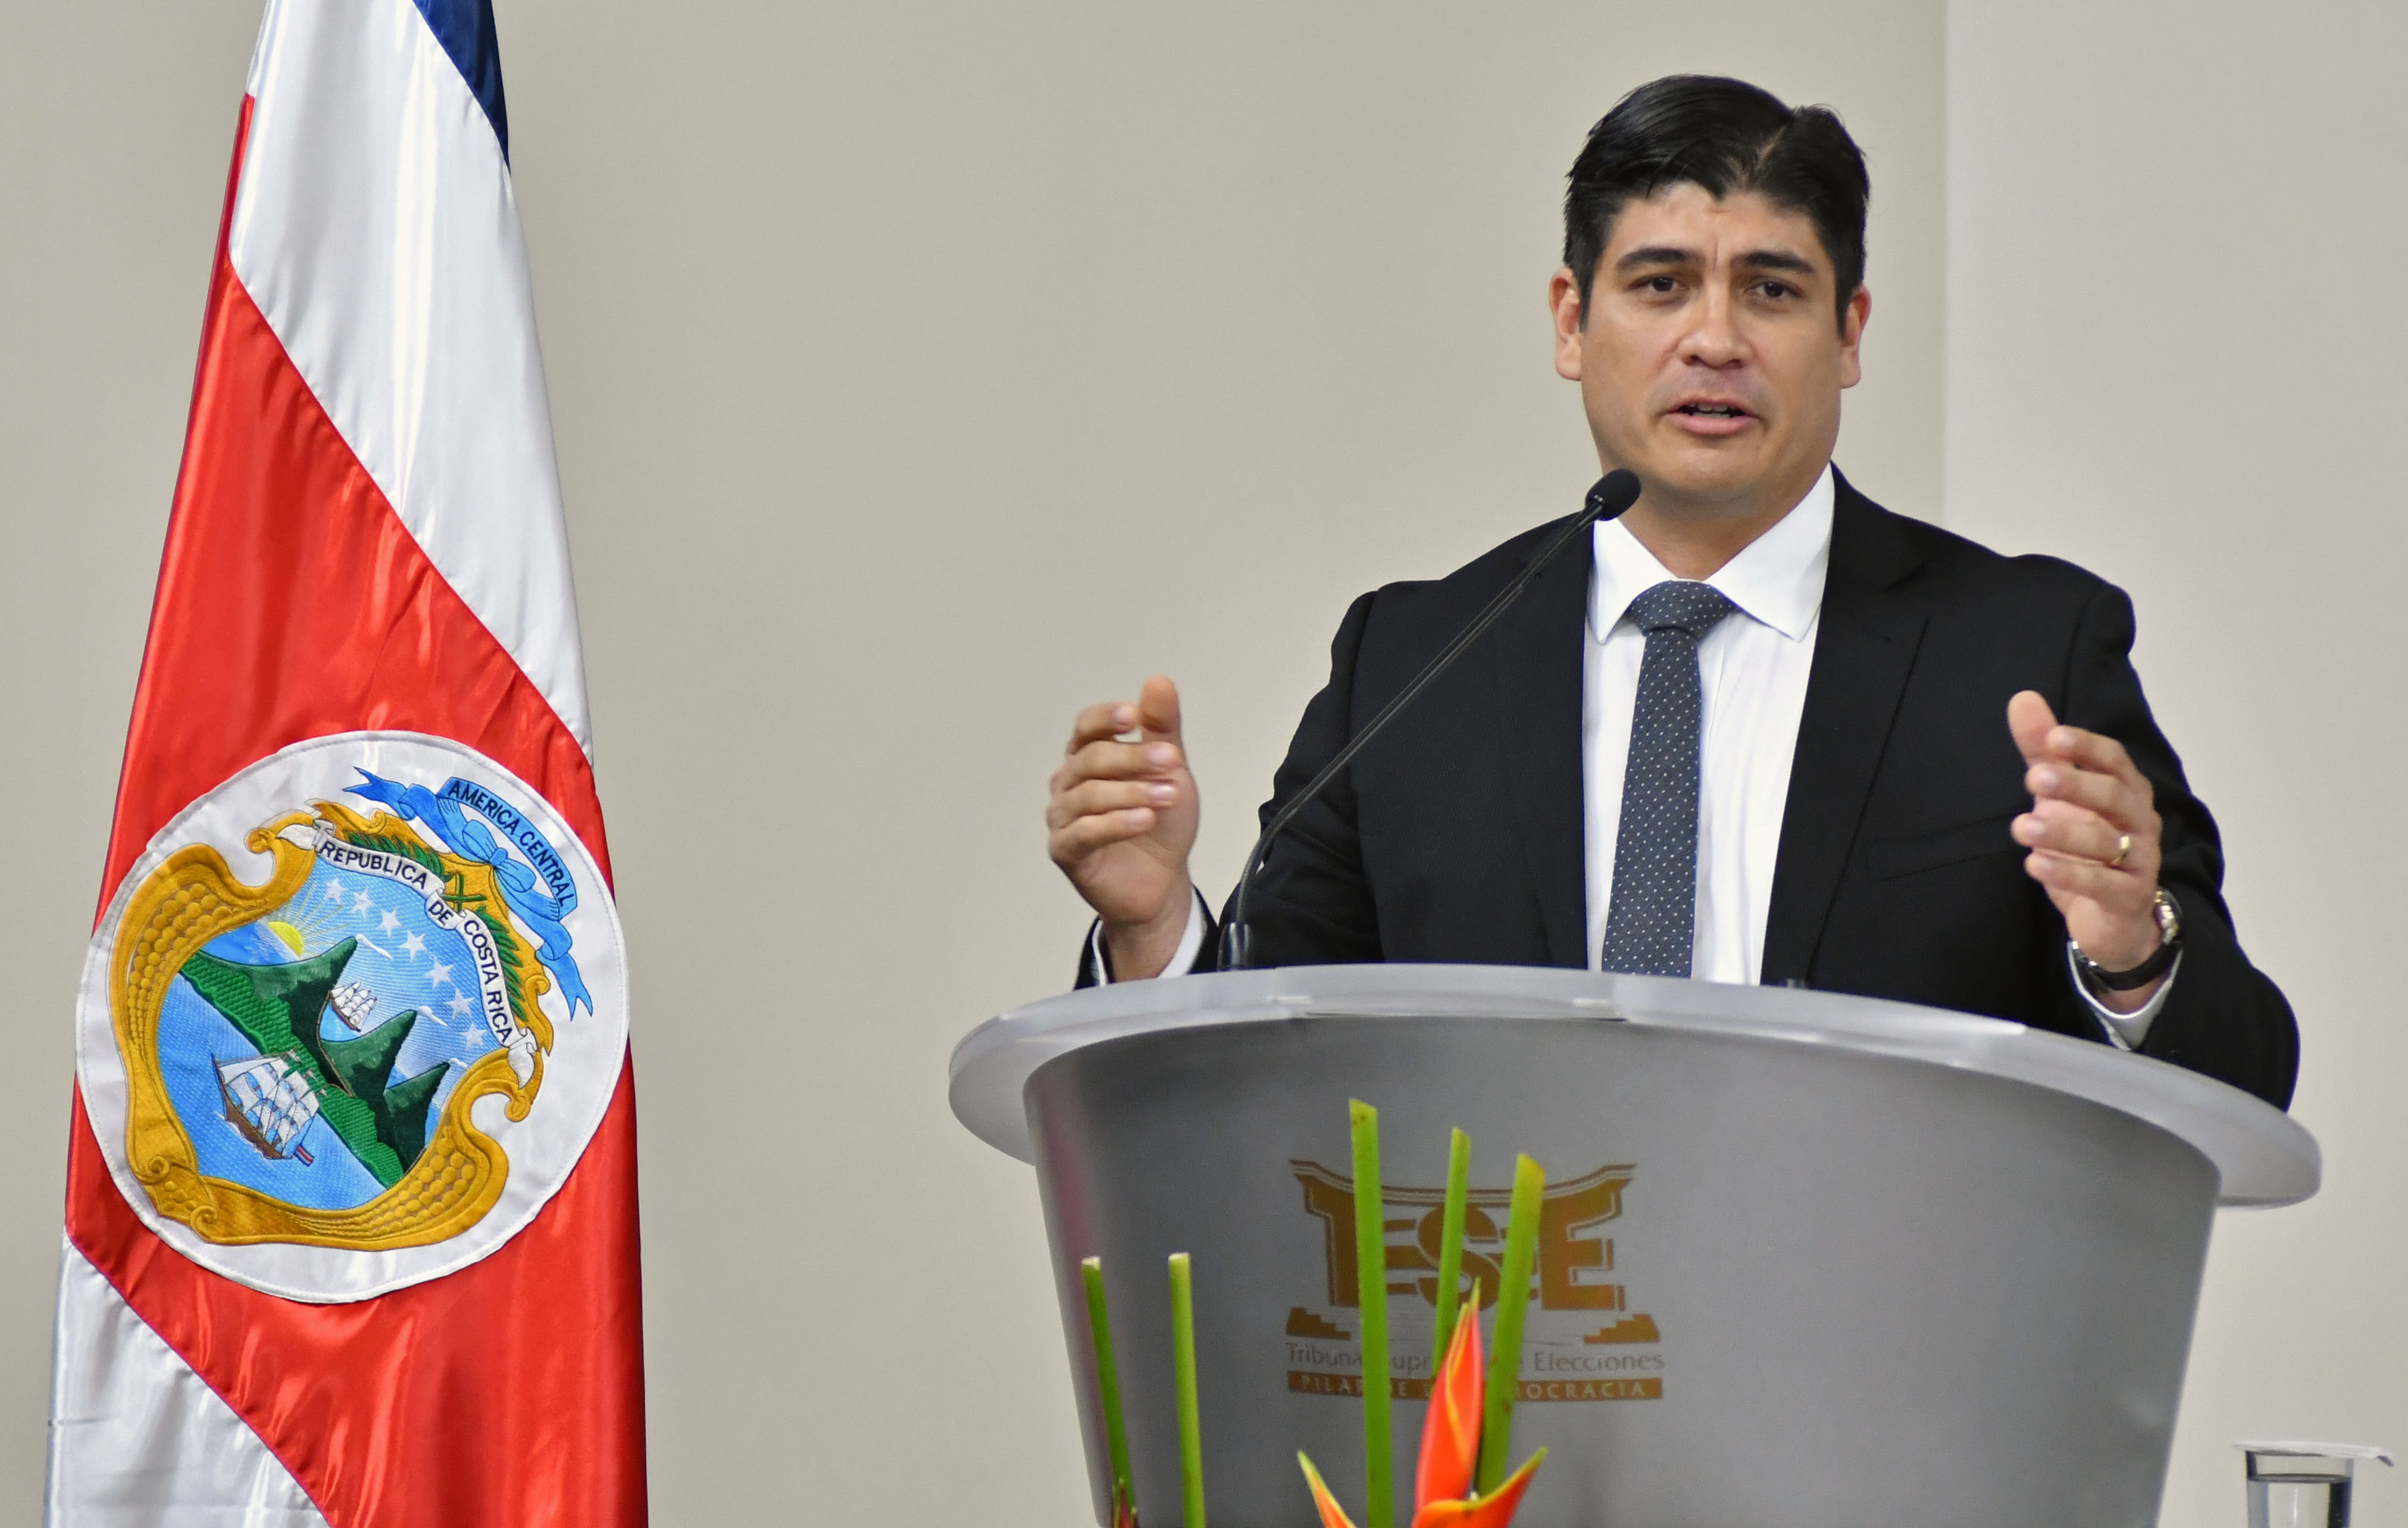 Presidente de Costa Rica anuncia reducción de su salario y el de otros funcionarios para enfrentar crisis económica